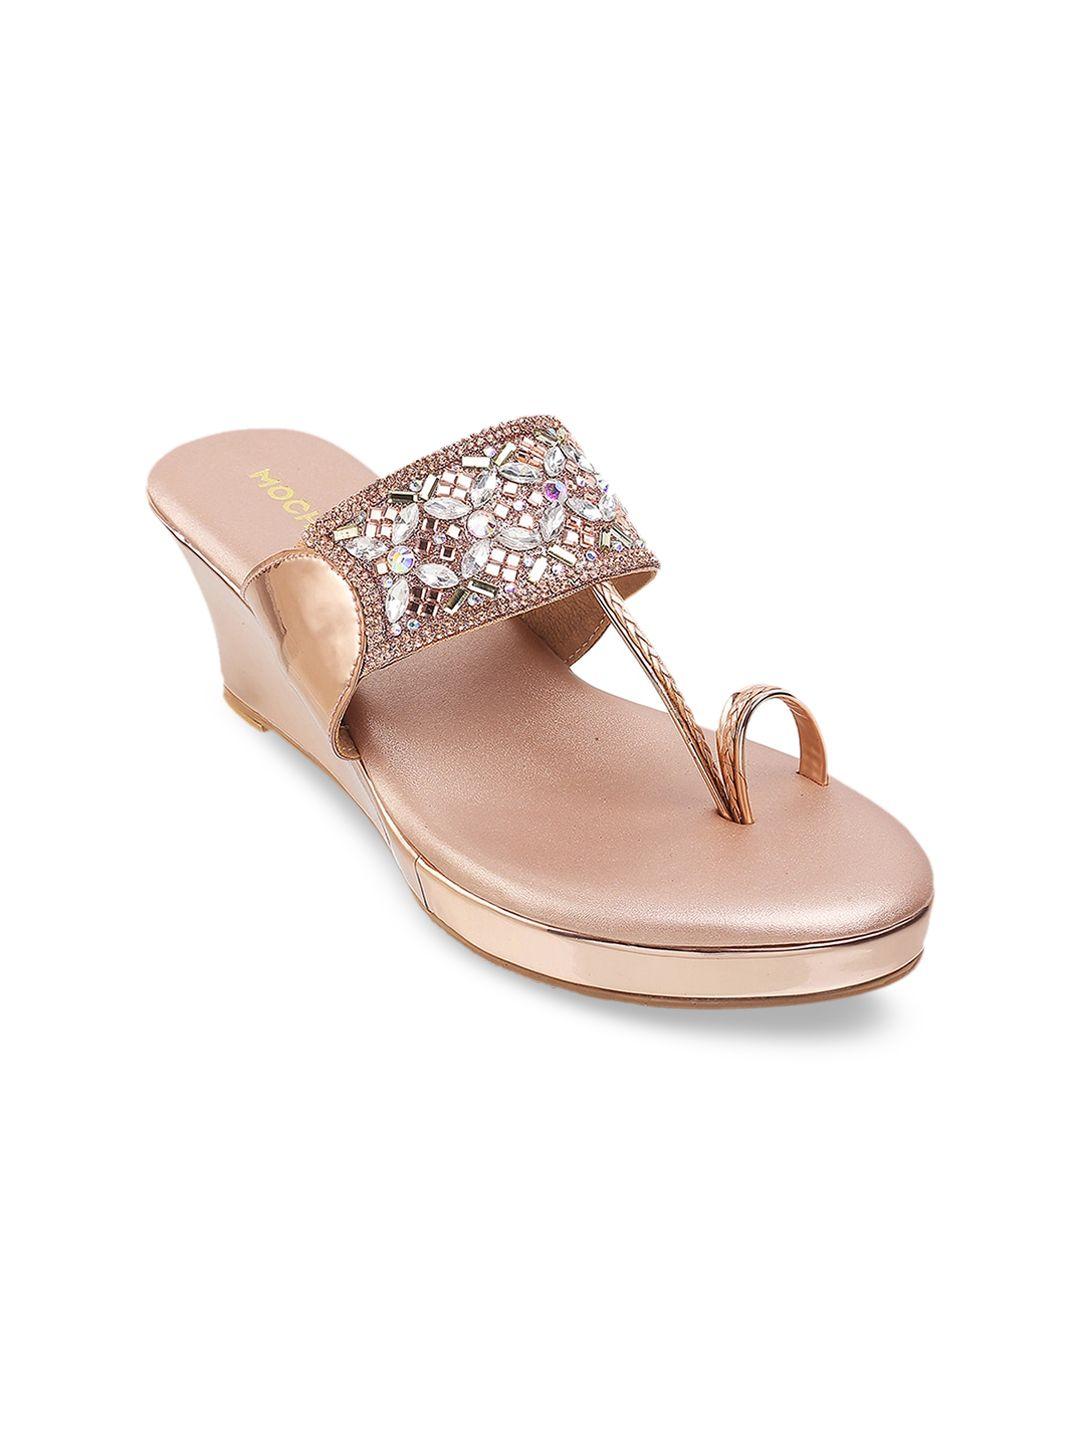 mochi-rose-gold-toned-embellished-open-toe-wedge-sandals